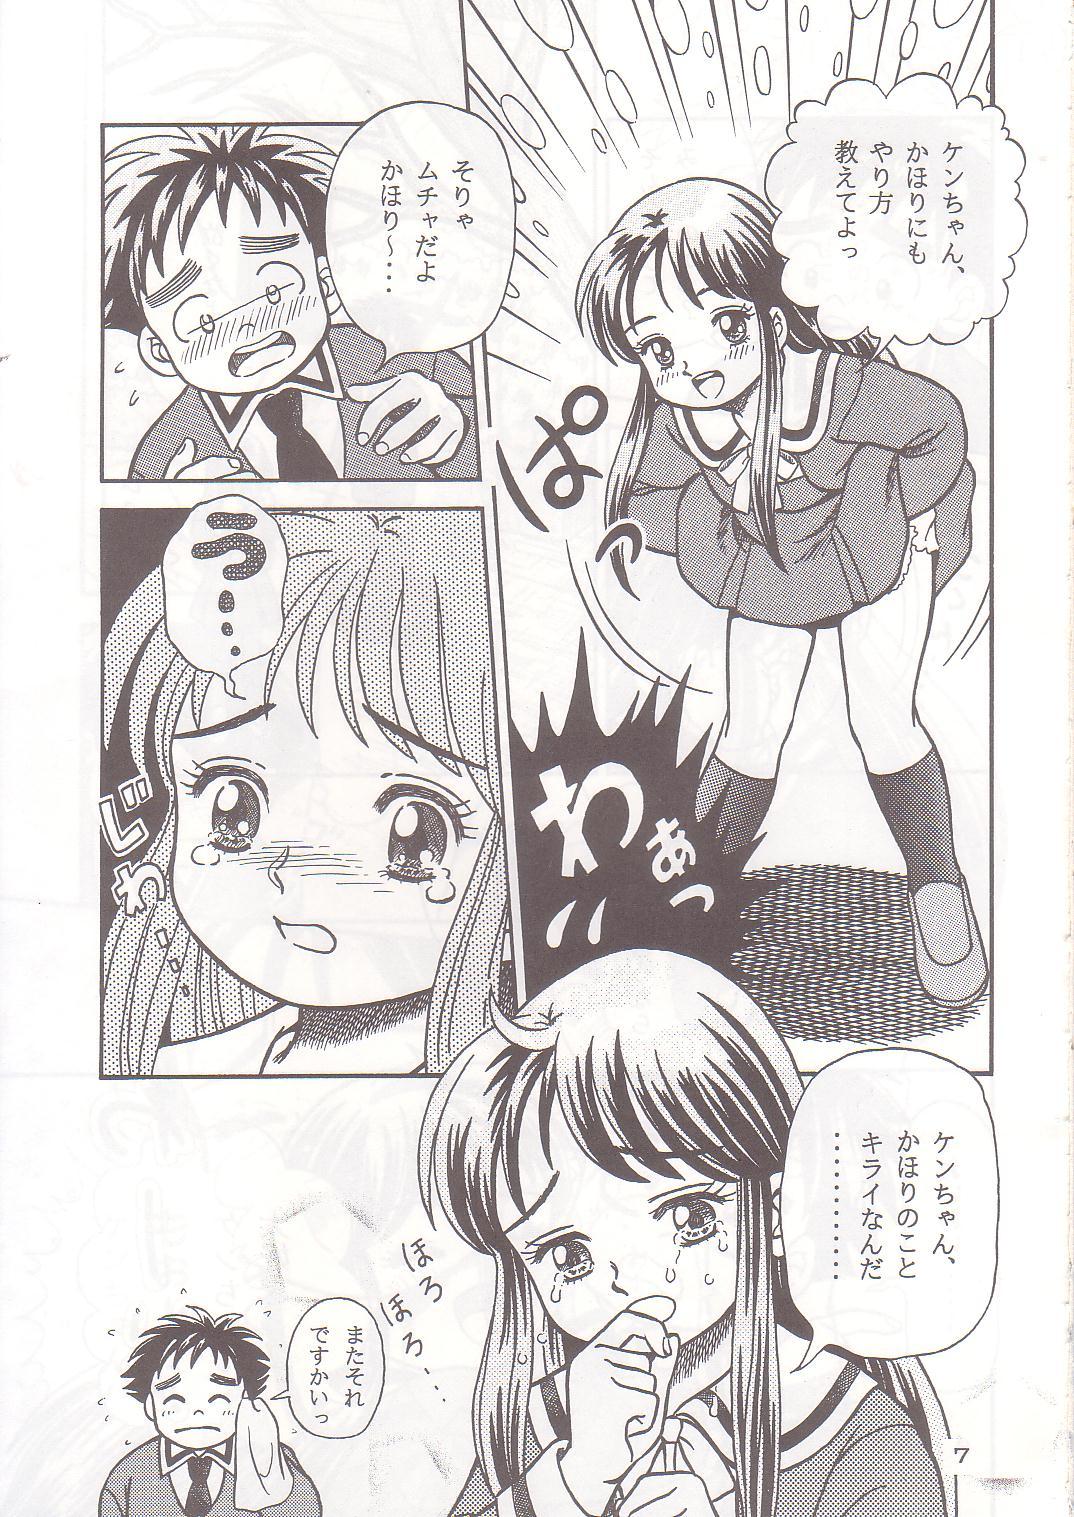 Vagina Okosama Shijou Shugi 1 - Dokkiri doctor Passivo - Page 6